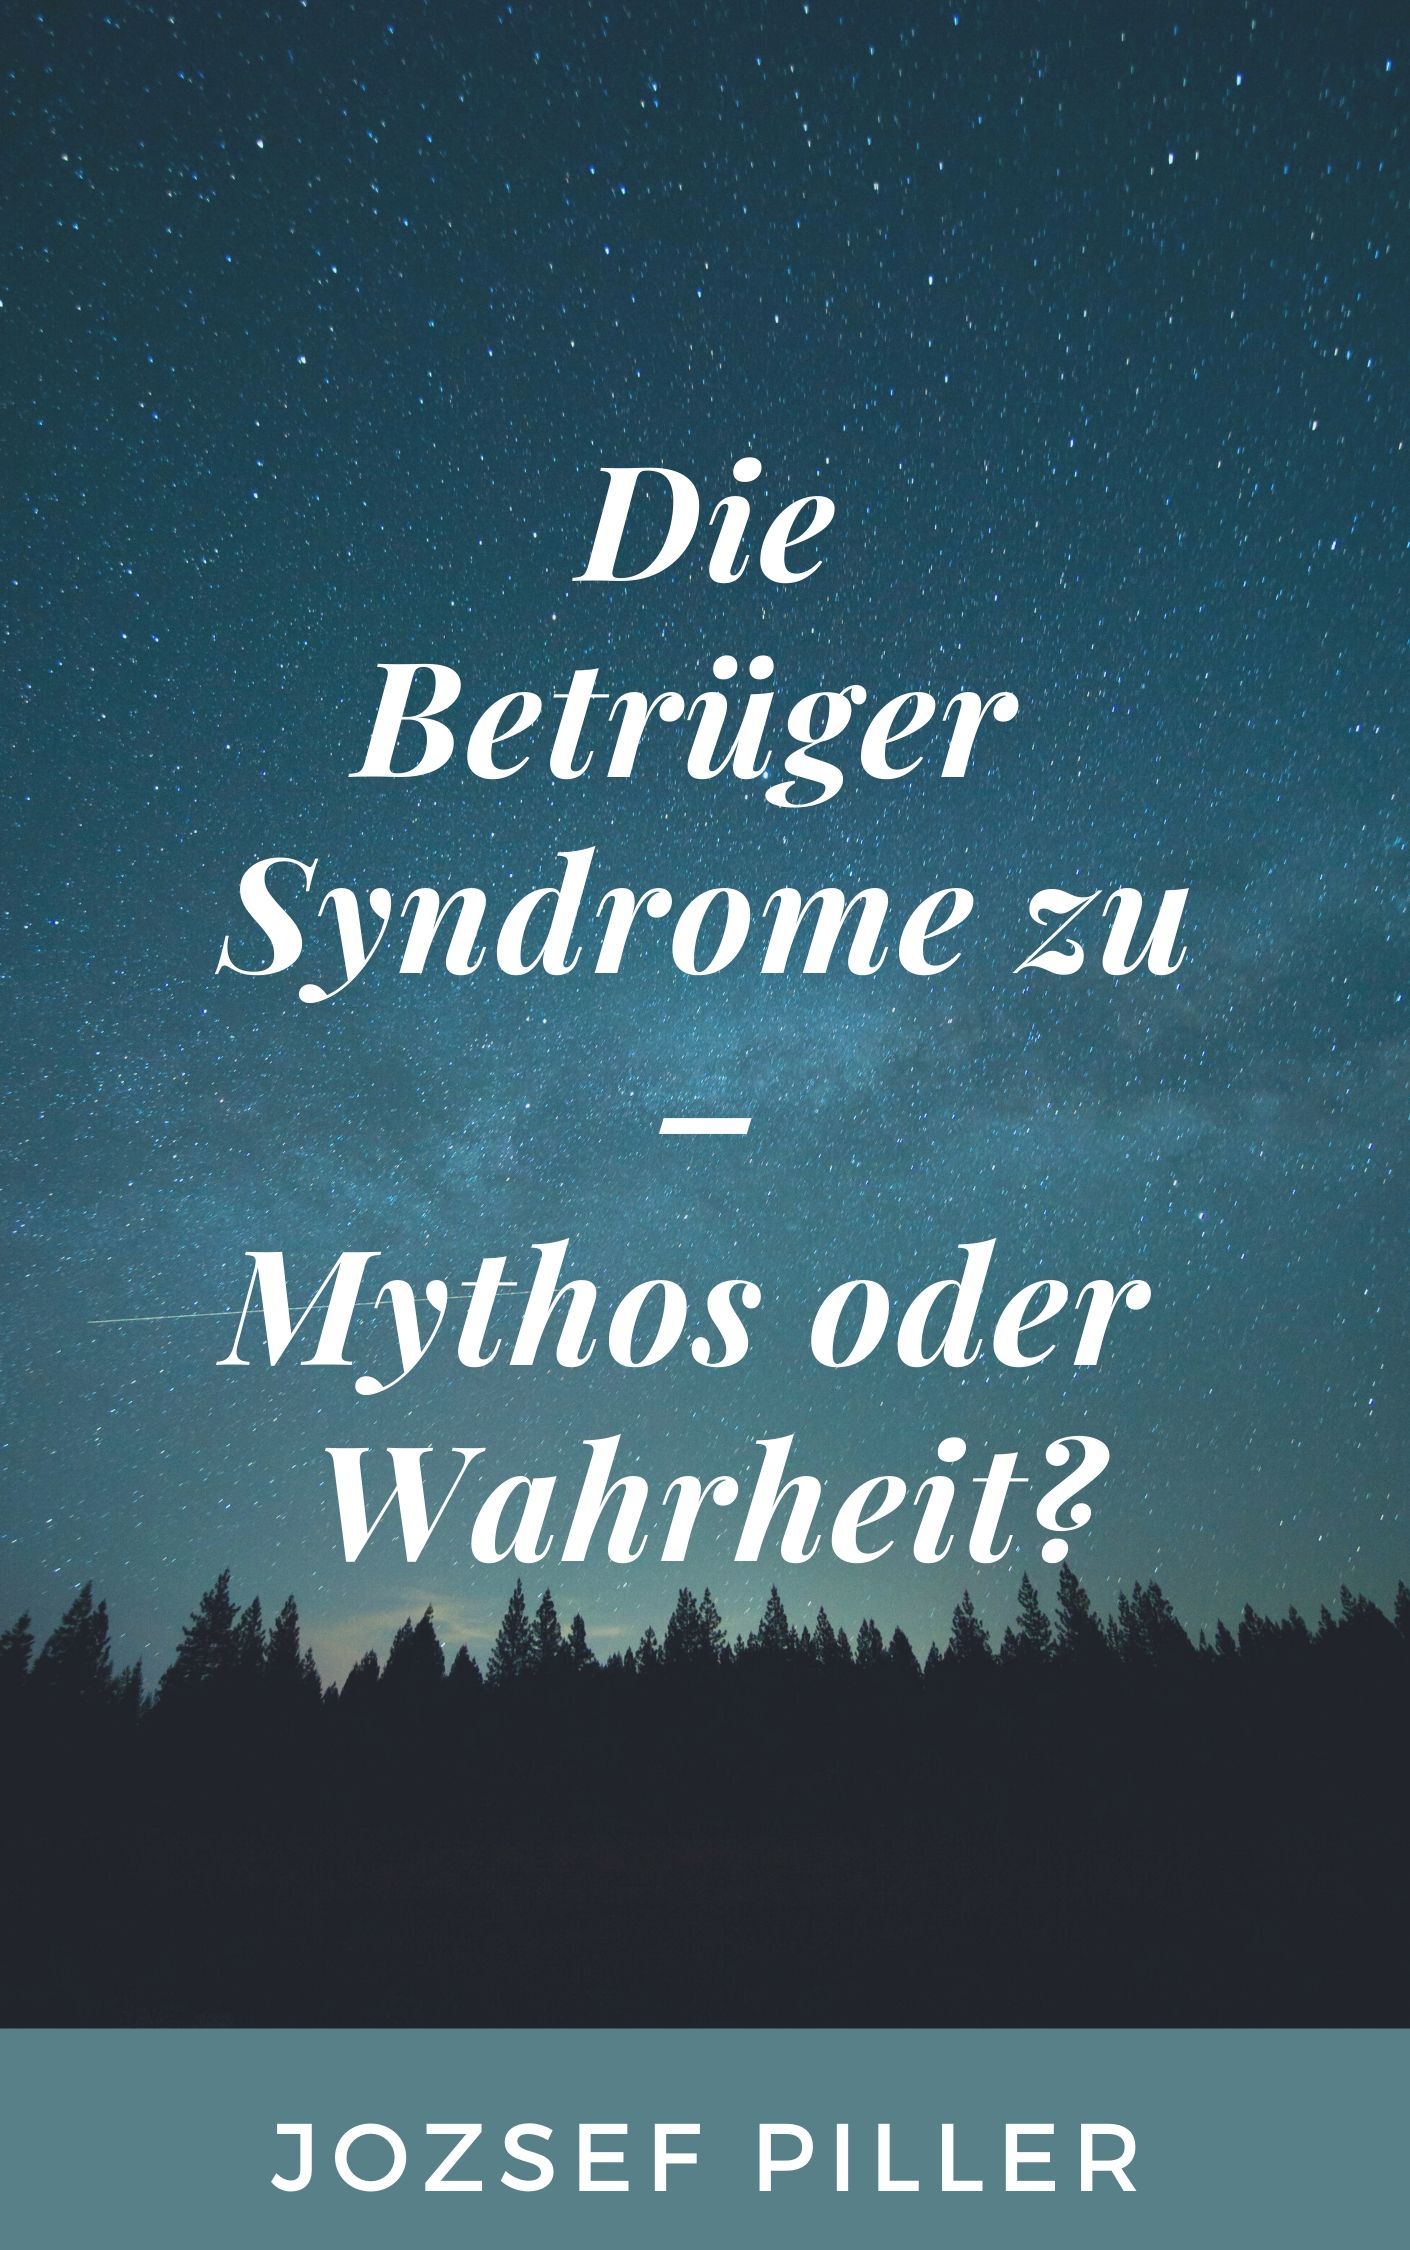 Die Betrüger Syndrome zu - Mythos oder Wahrheit?, e-bog af Jozsef Piller